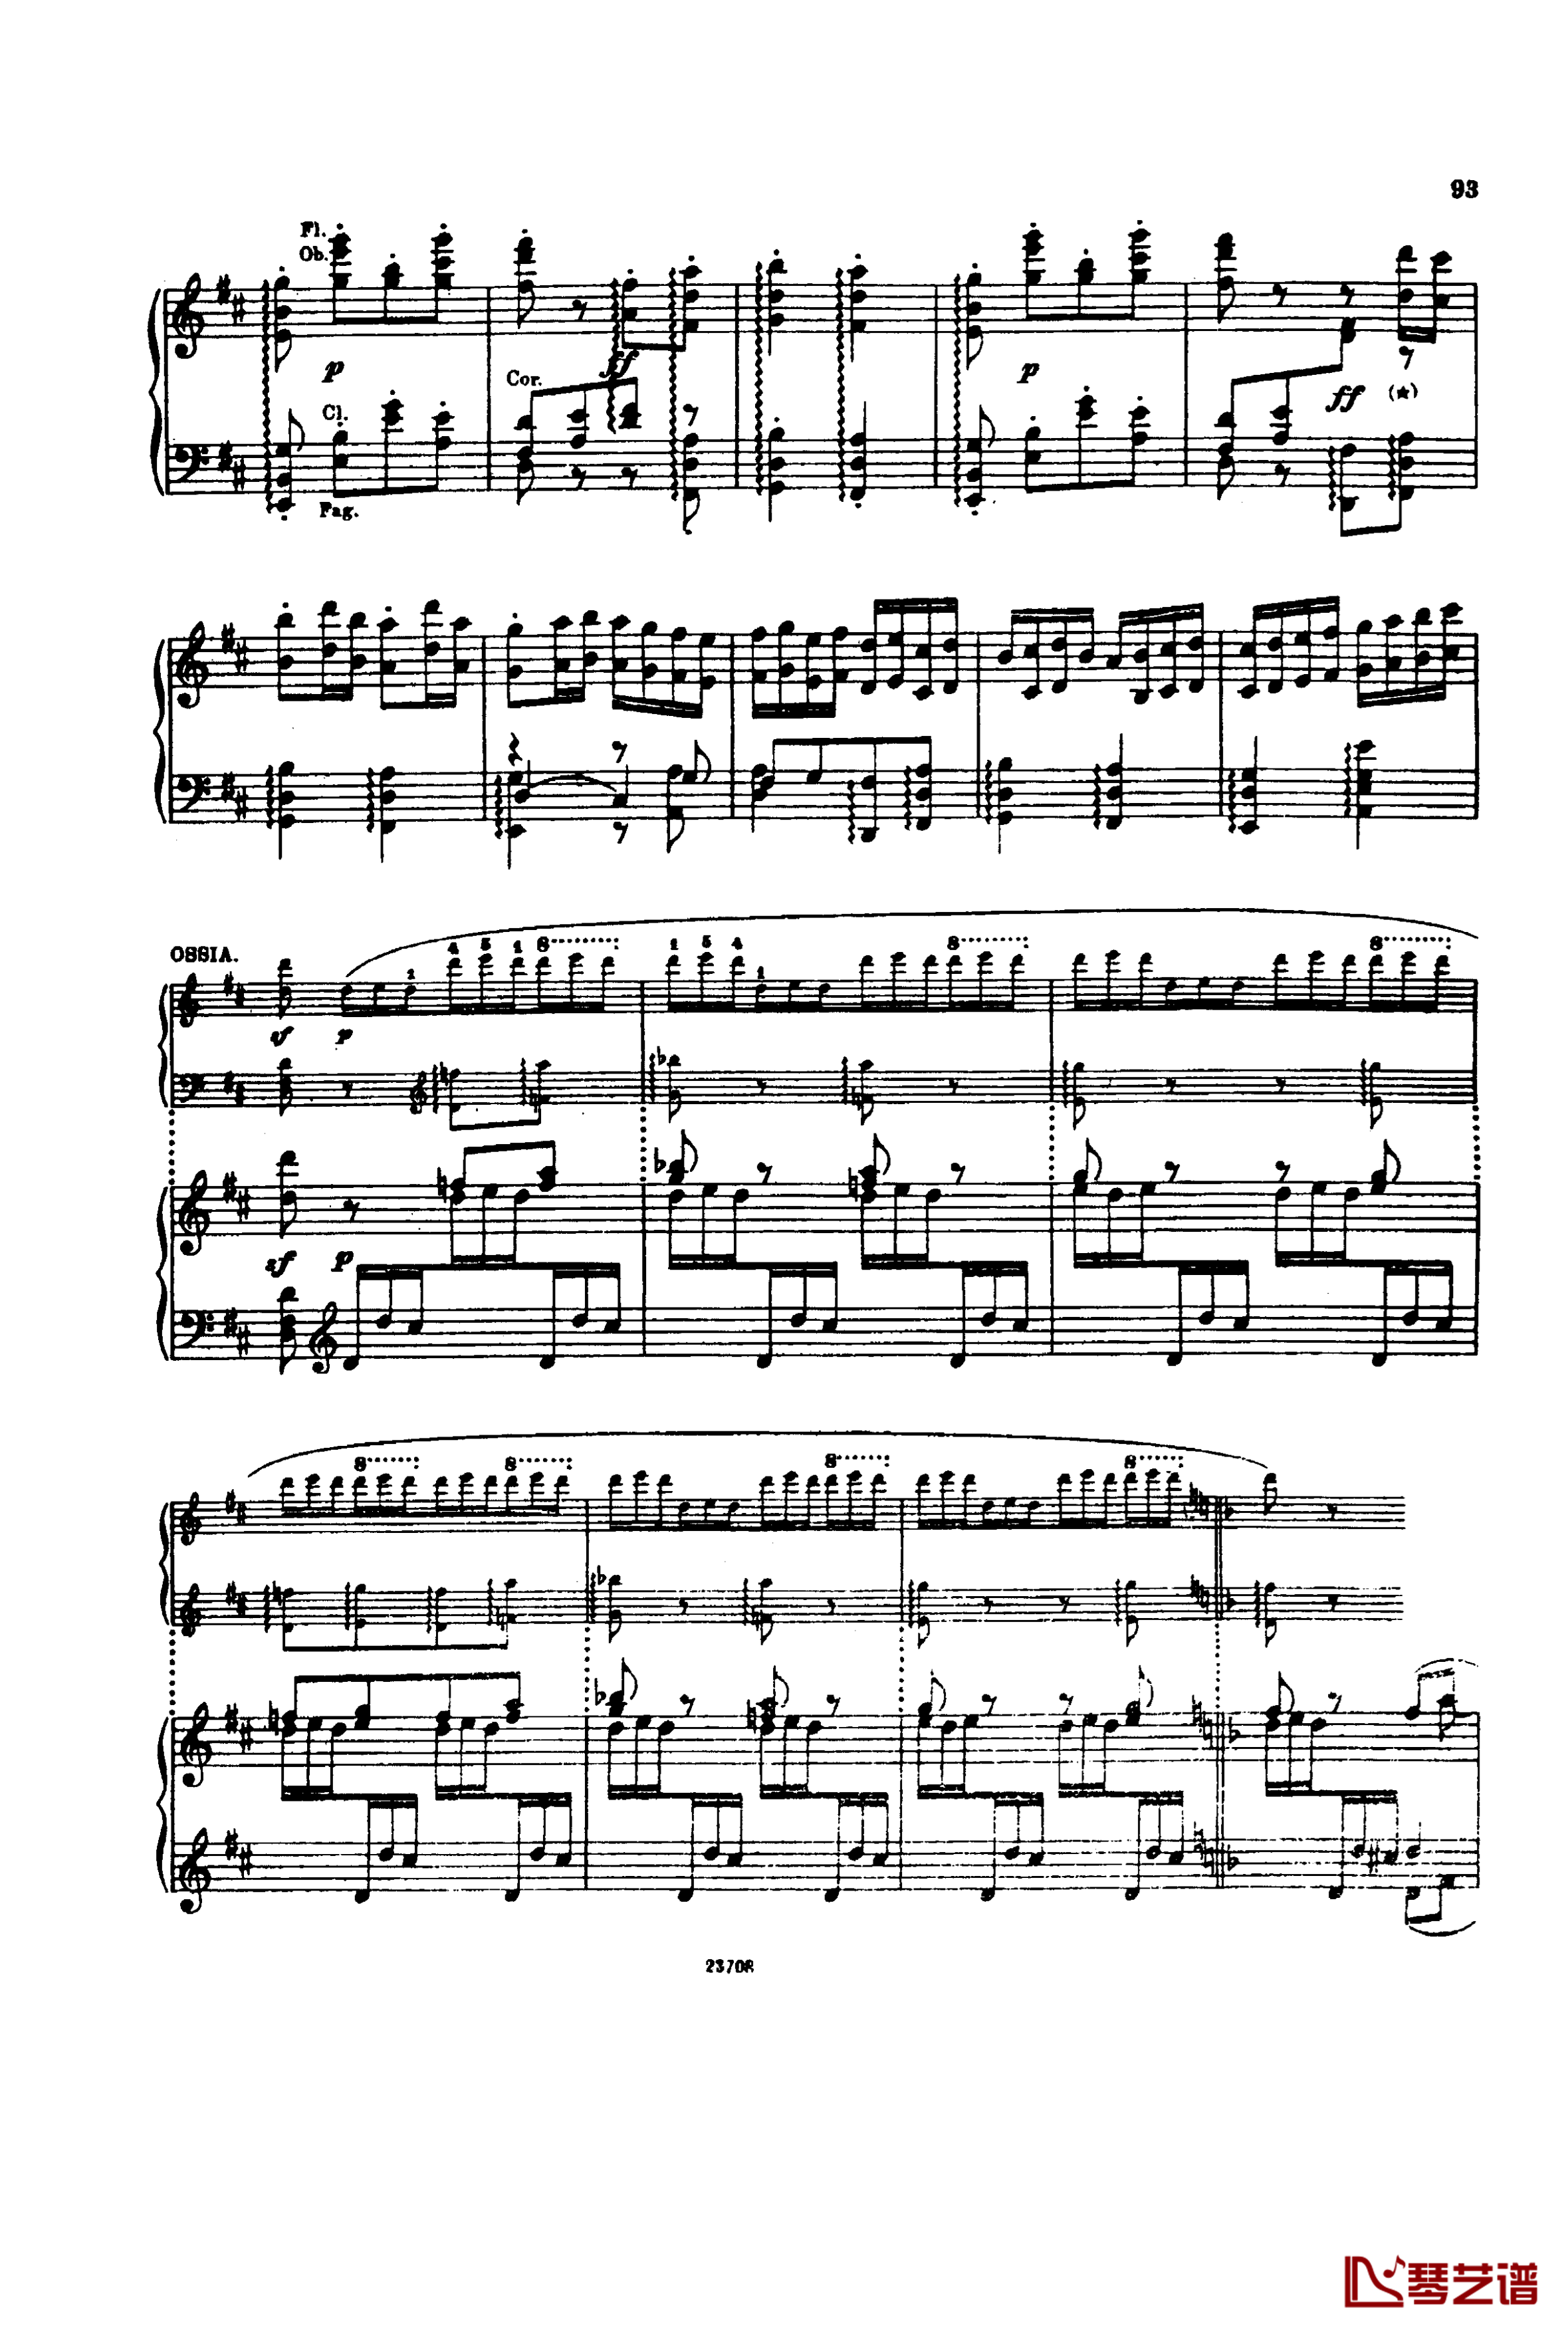 卡玛林斯卡亚幻想曲钢琴谱-格林卡7